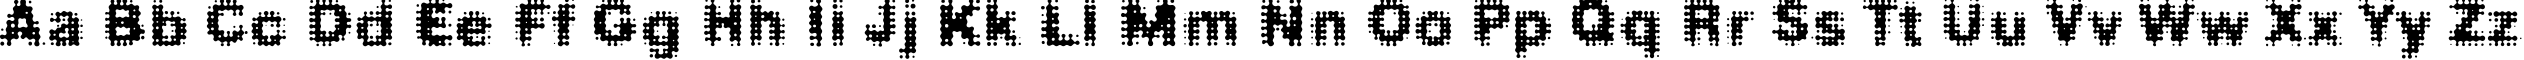 Пример написания английского алфавита шрифтом FDMedian